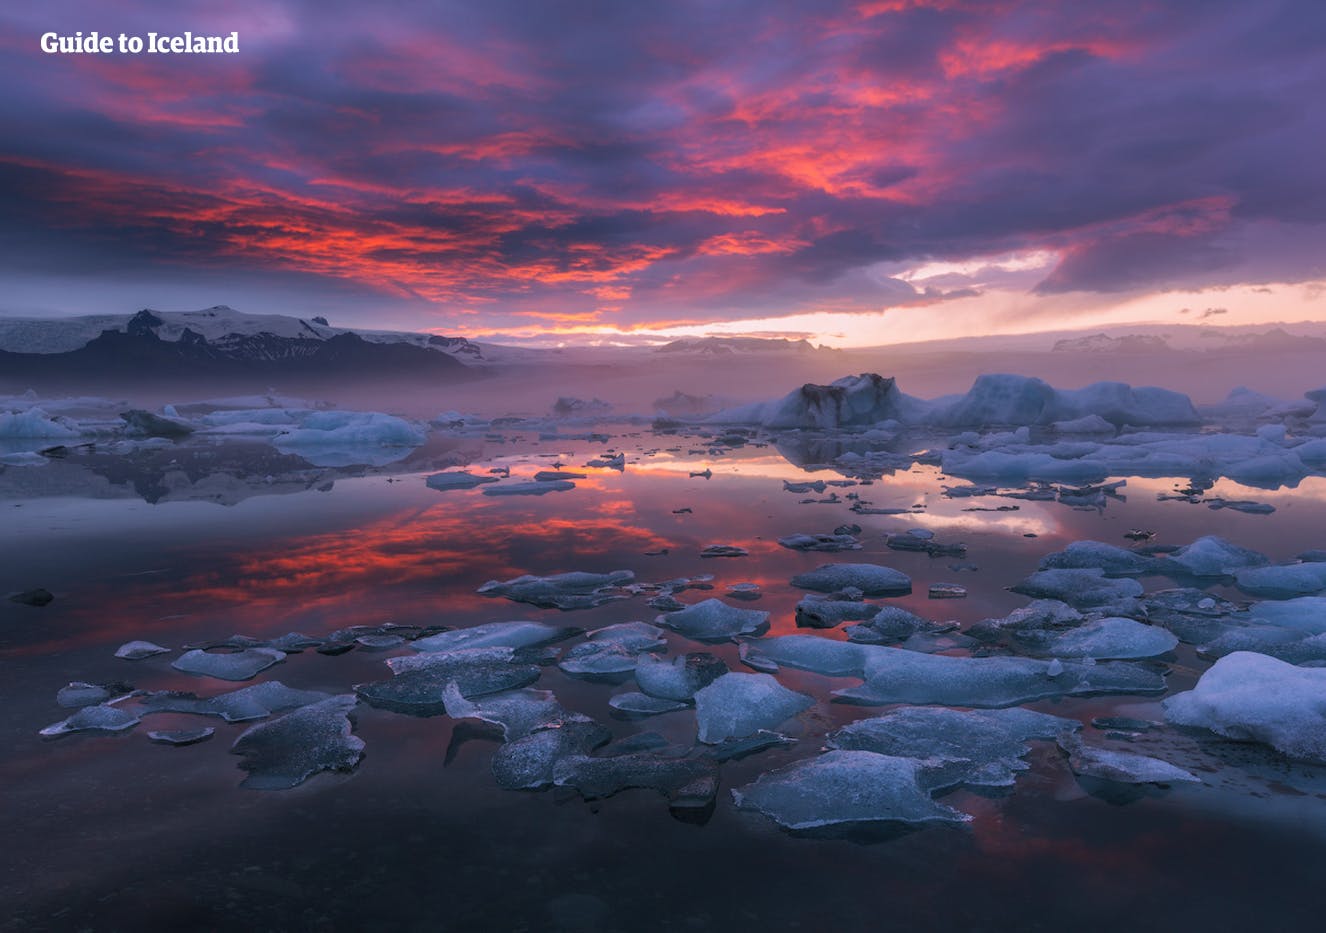 Visita la hermosa laguna glaciar de Jökulsárlón en un tour de verano en coche, y contempla los icebergs que flotan pacíficamente en el agua helada.